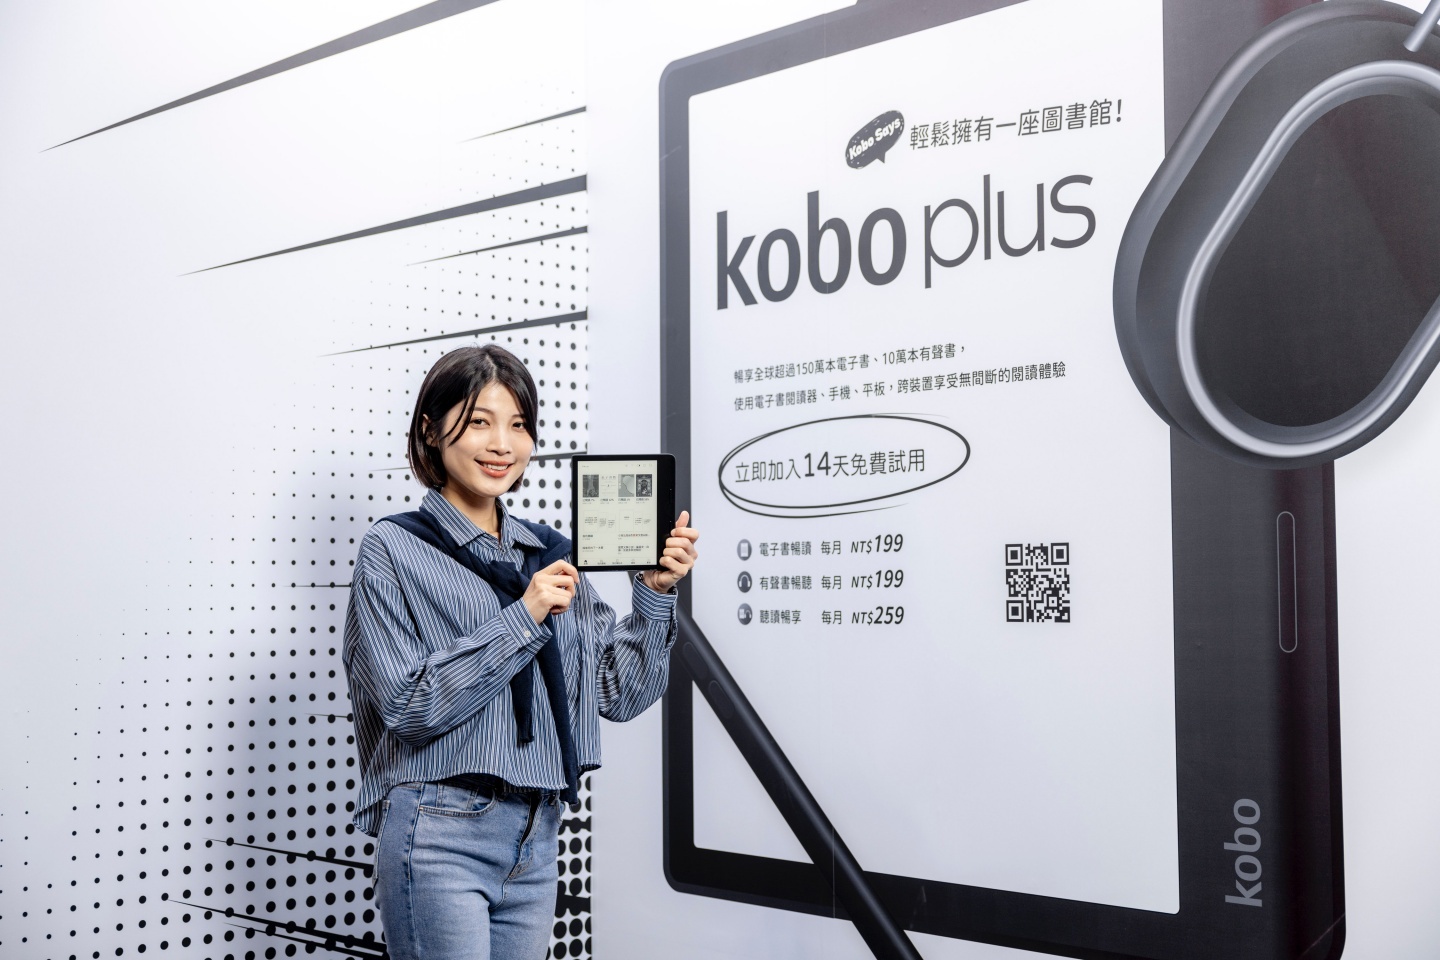 『 Kobo Plus 訂閱制 』上線！每月 199 起，即可隨時暢讀逾 150 萬本電子書 或 15 萬本有聲書